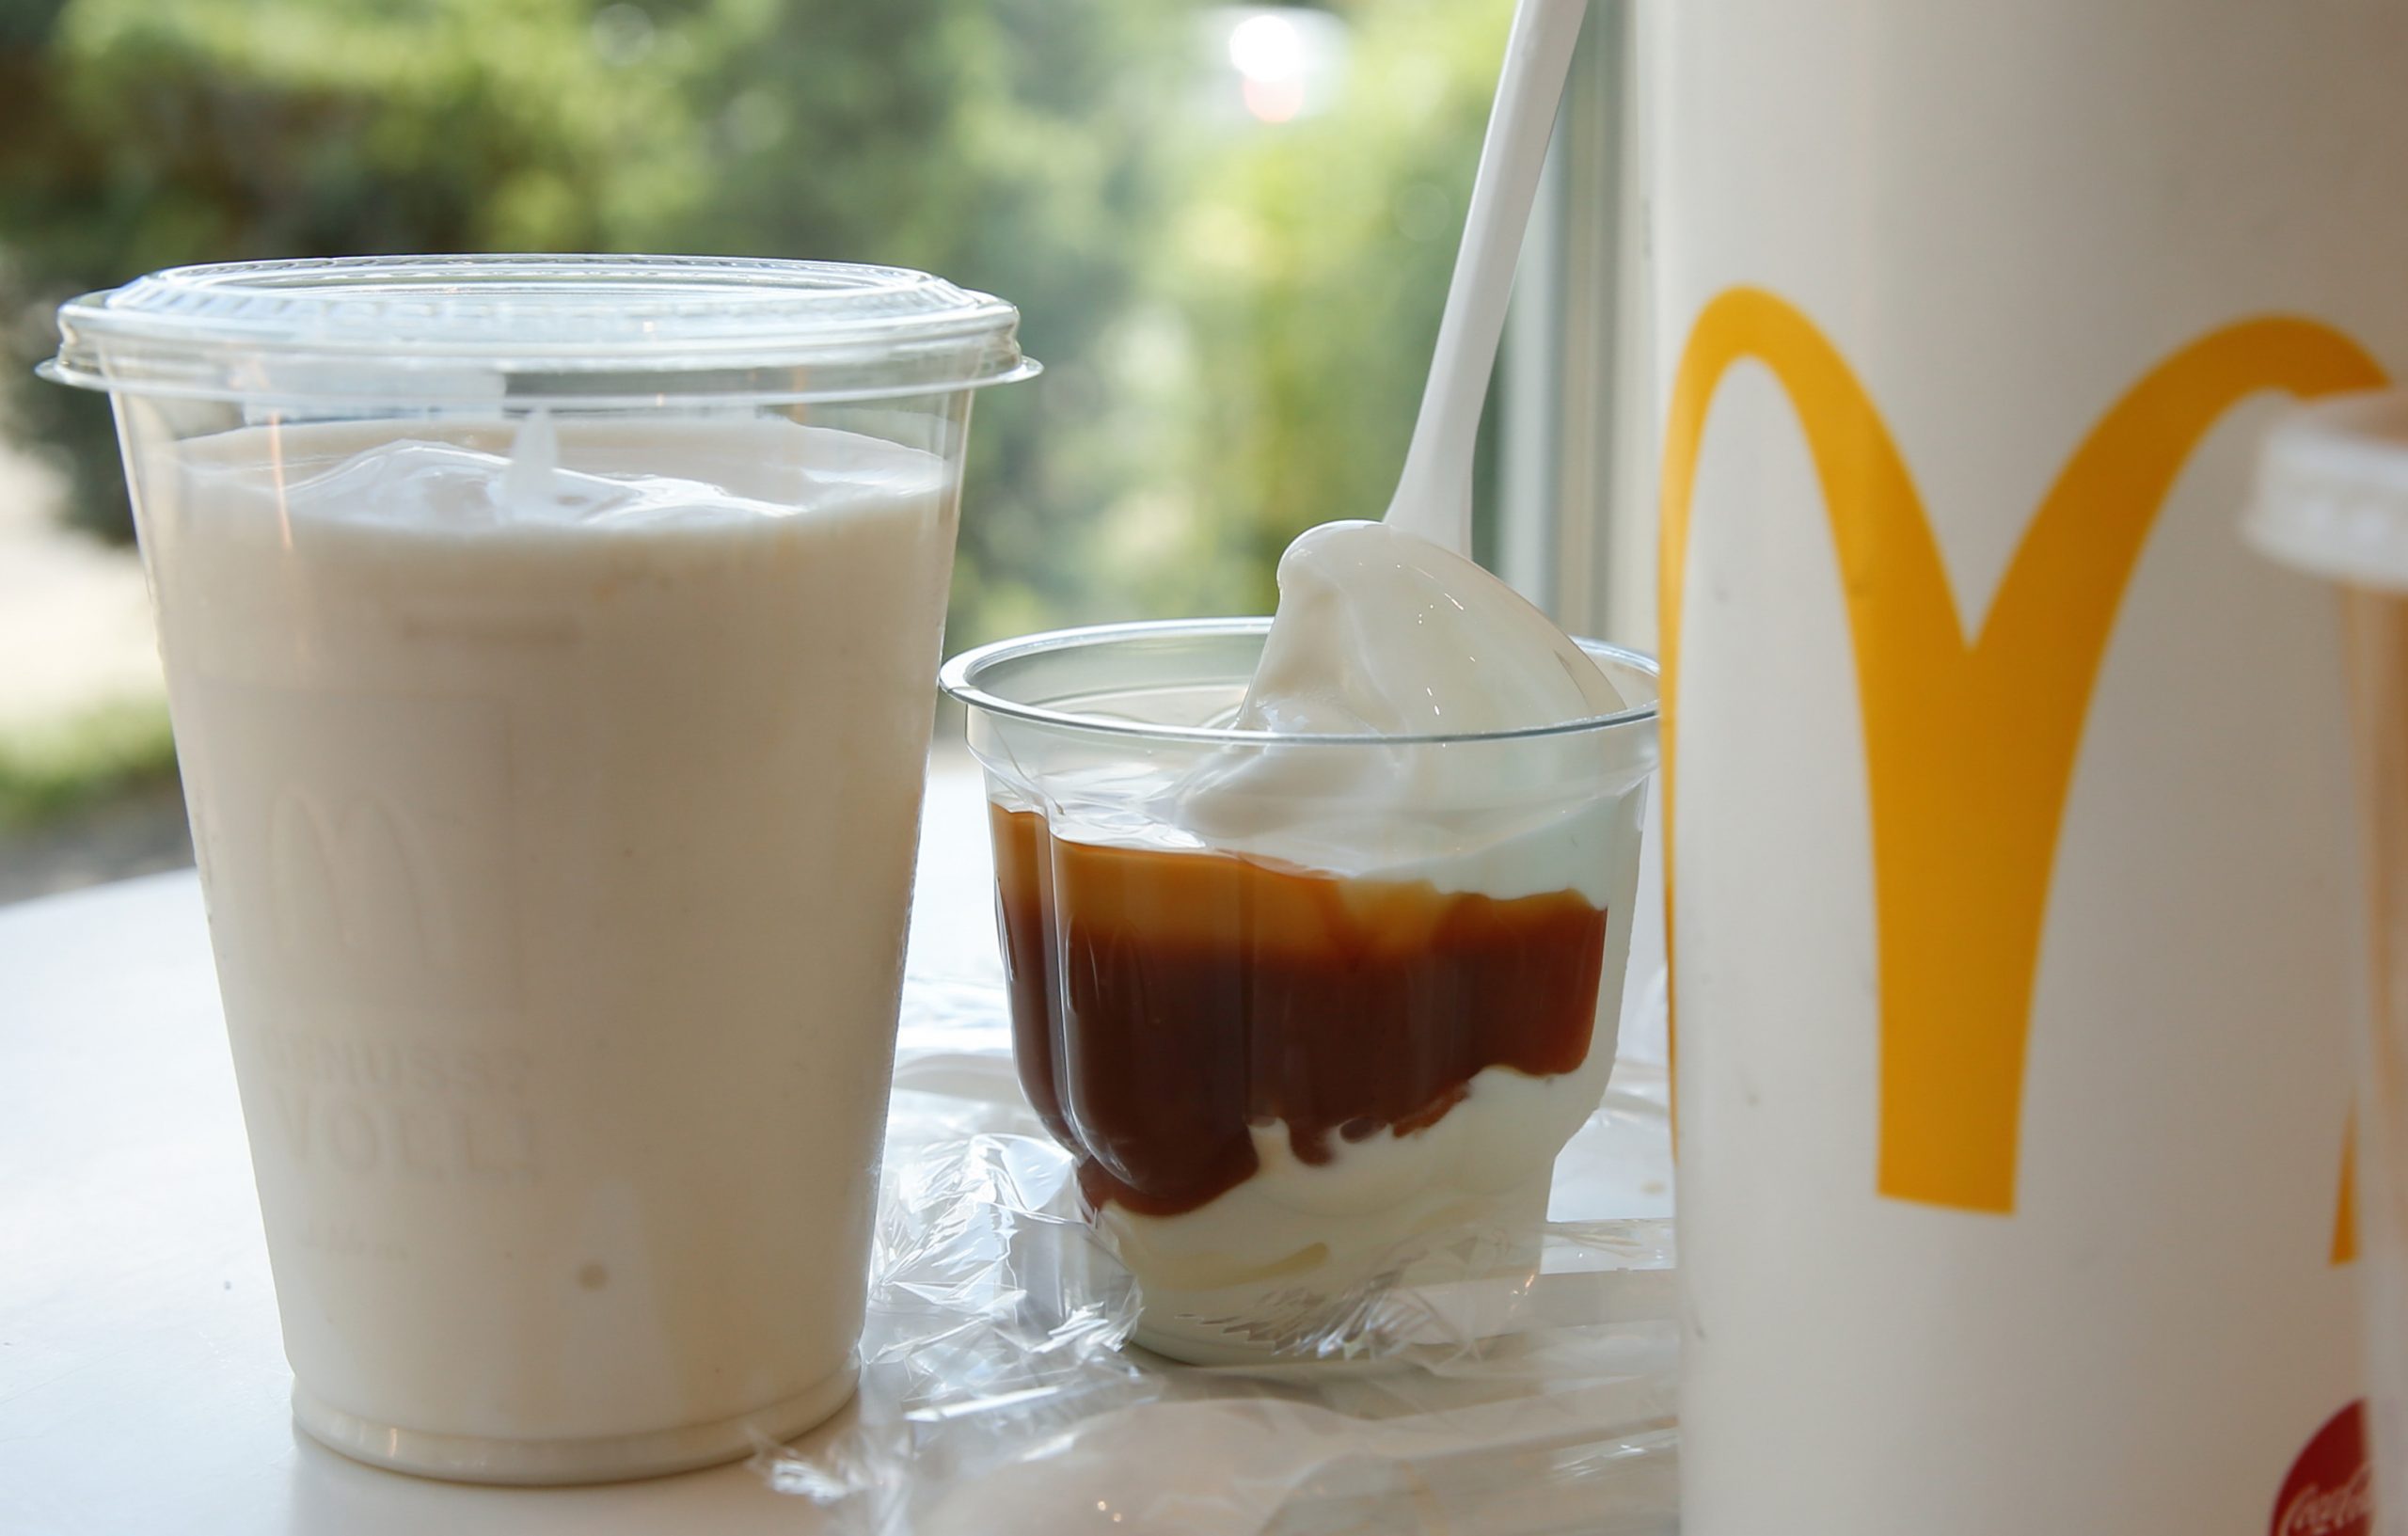 McDonald's shake and sundae